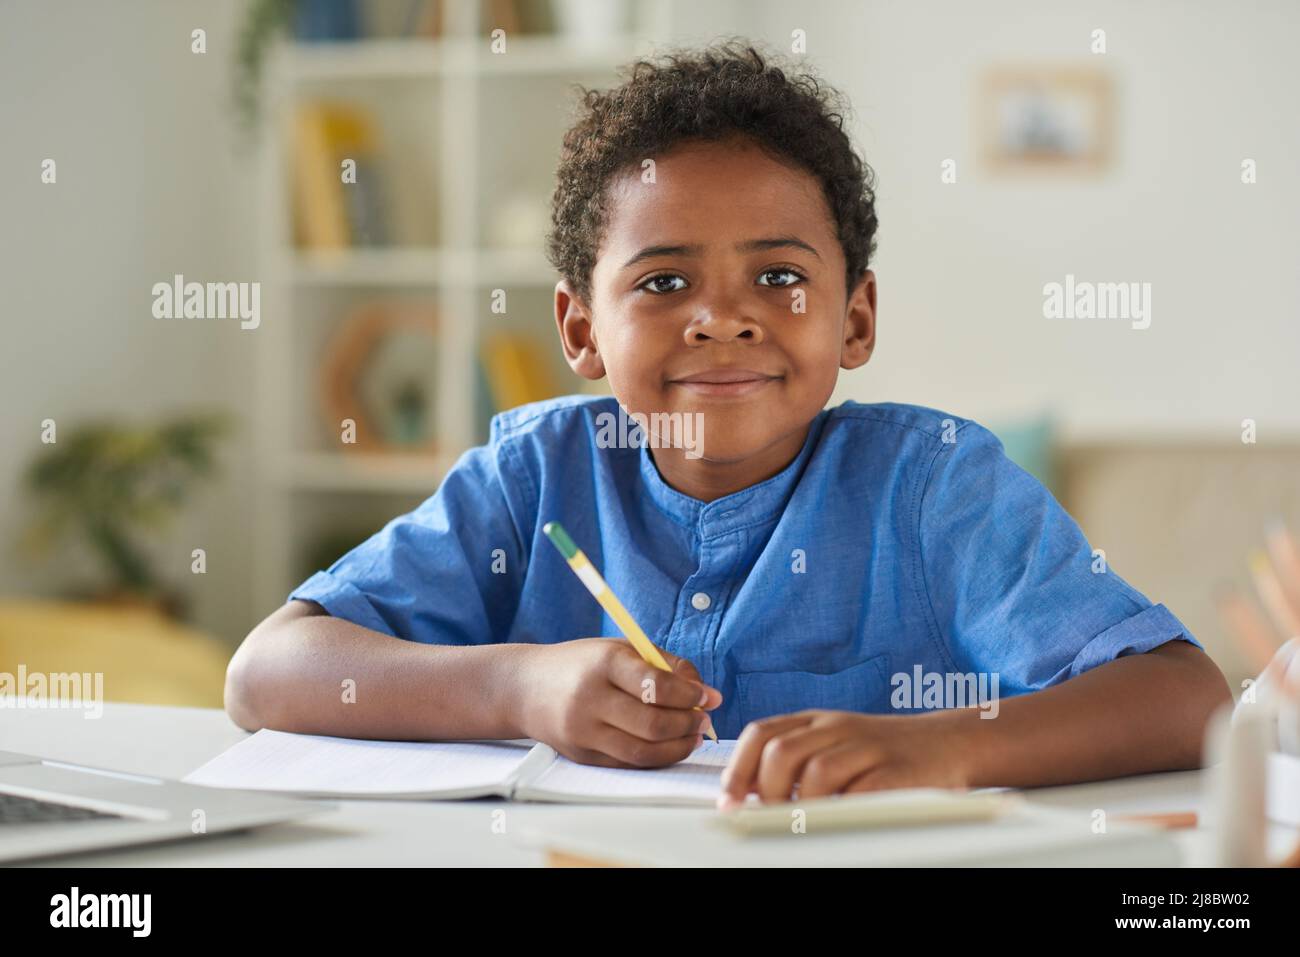 Porträt eines lächelnden afroamerikanischen Jungen in blauem Hemd, der am Tisch sitzt und Notizen im Arbeitsbuch macht Stockfoto